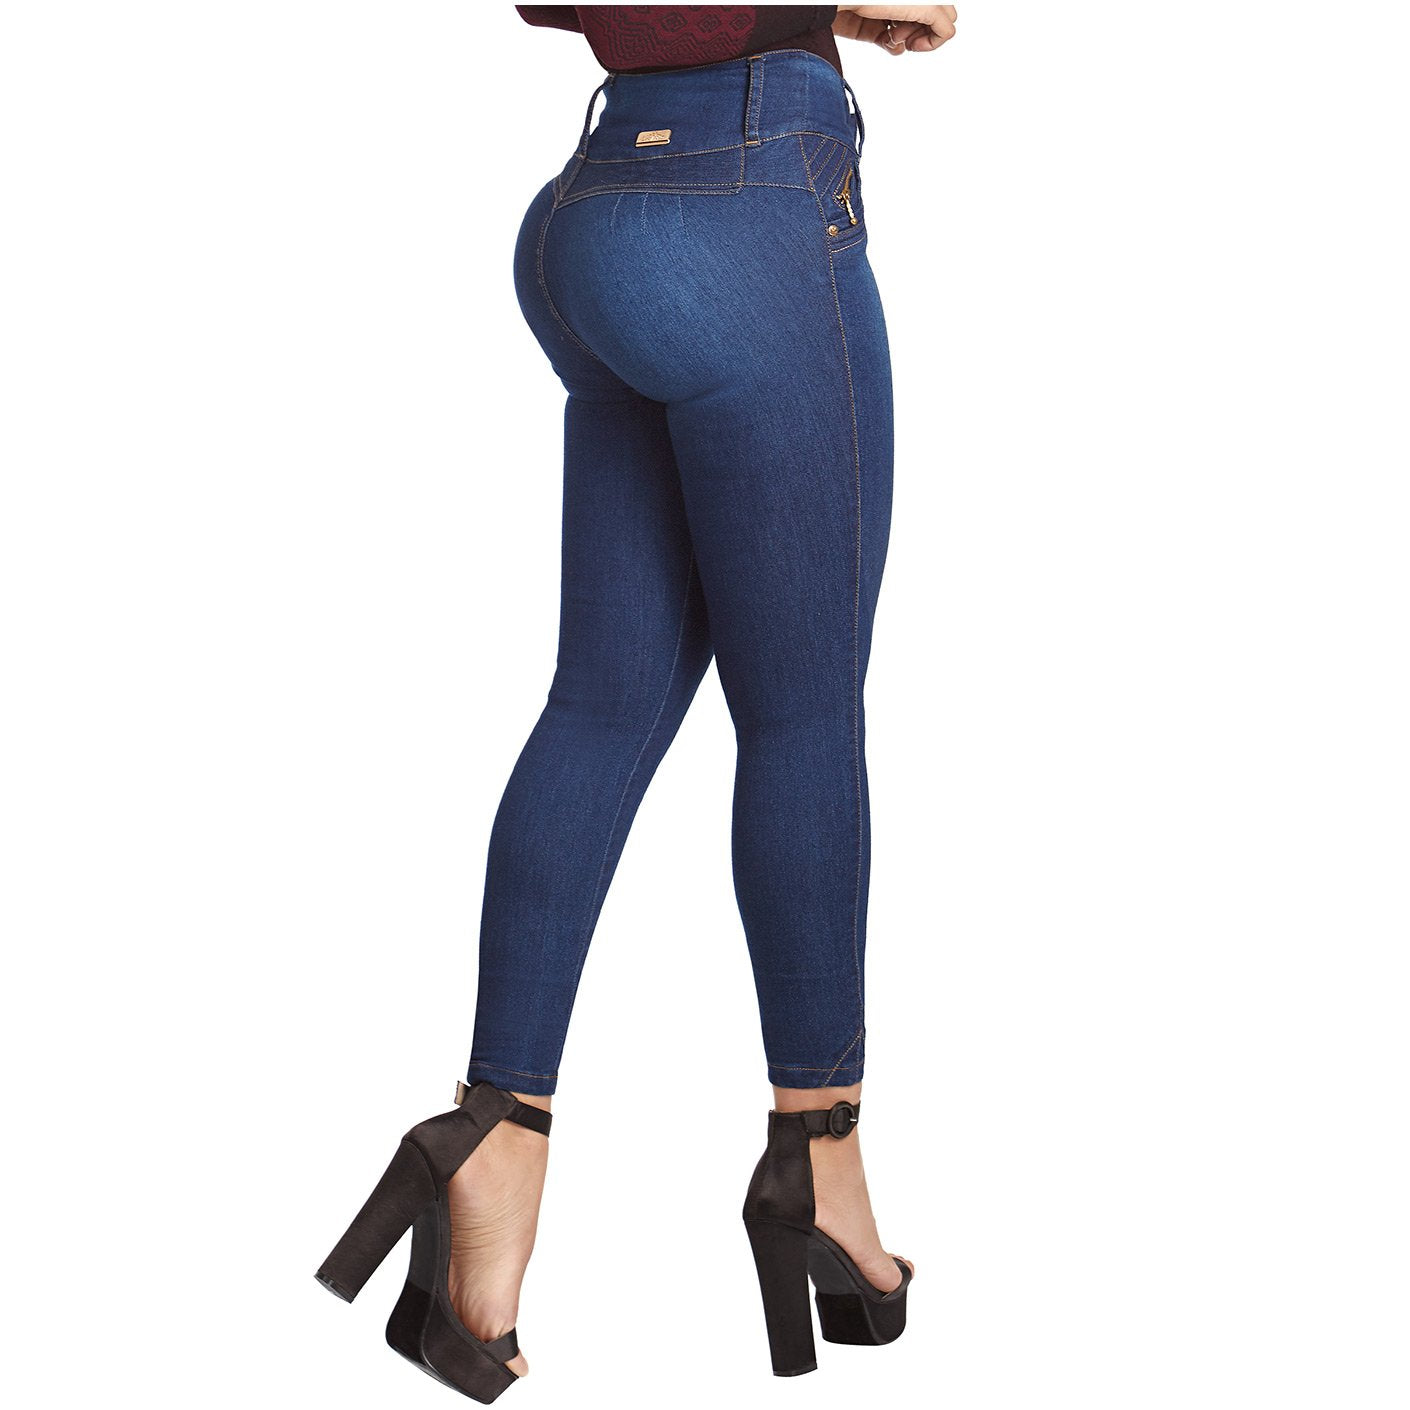 Nicolette shapewear jeans, Jeans, Colombiano Jeans Nicolette Shapewear  Jeans Junior Size Usa 3